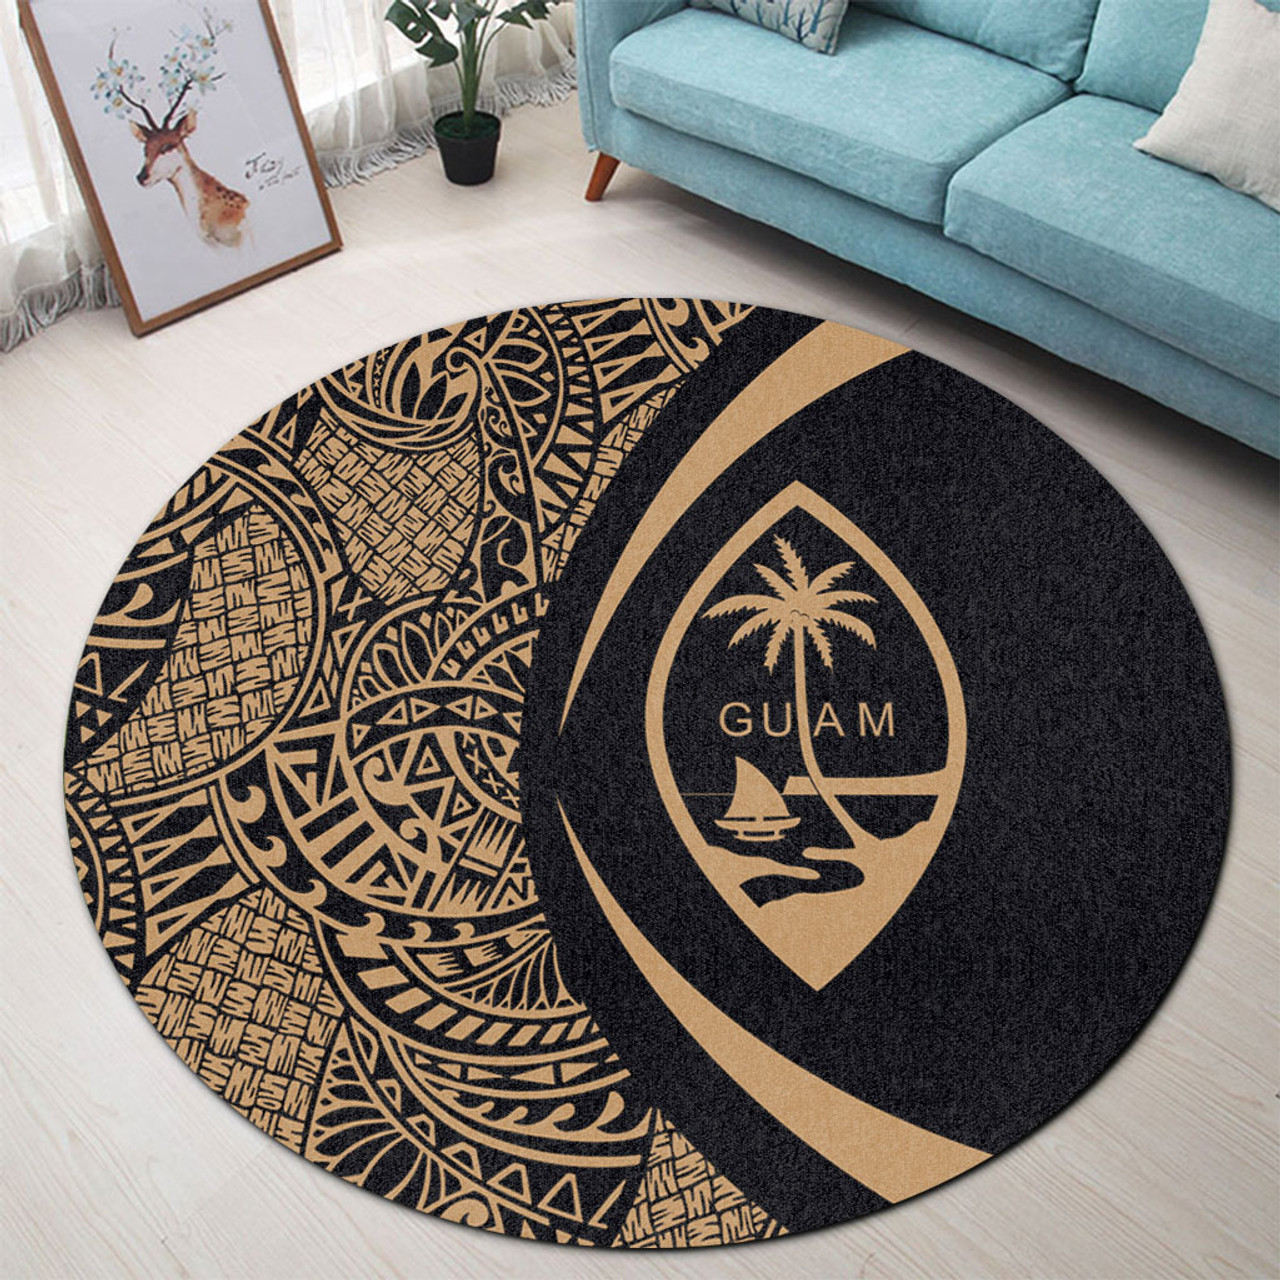 Guam Round Rug Lauhala Gold Circle Style